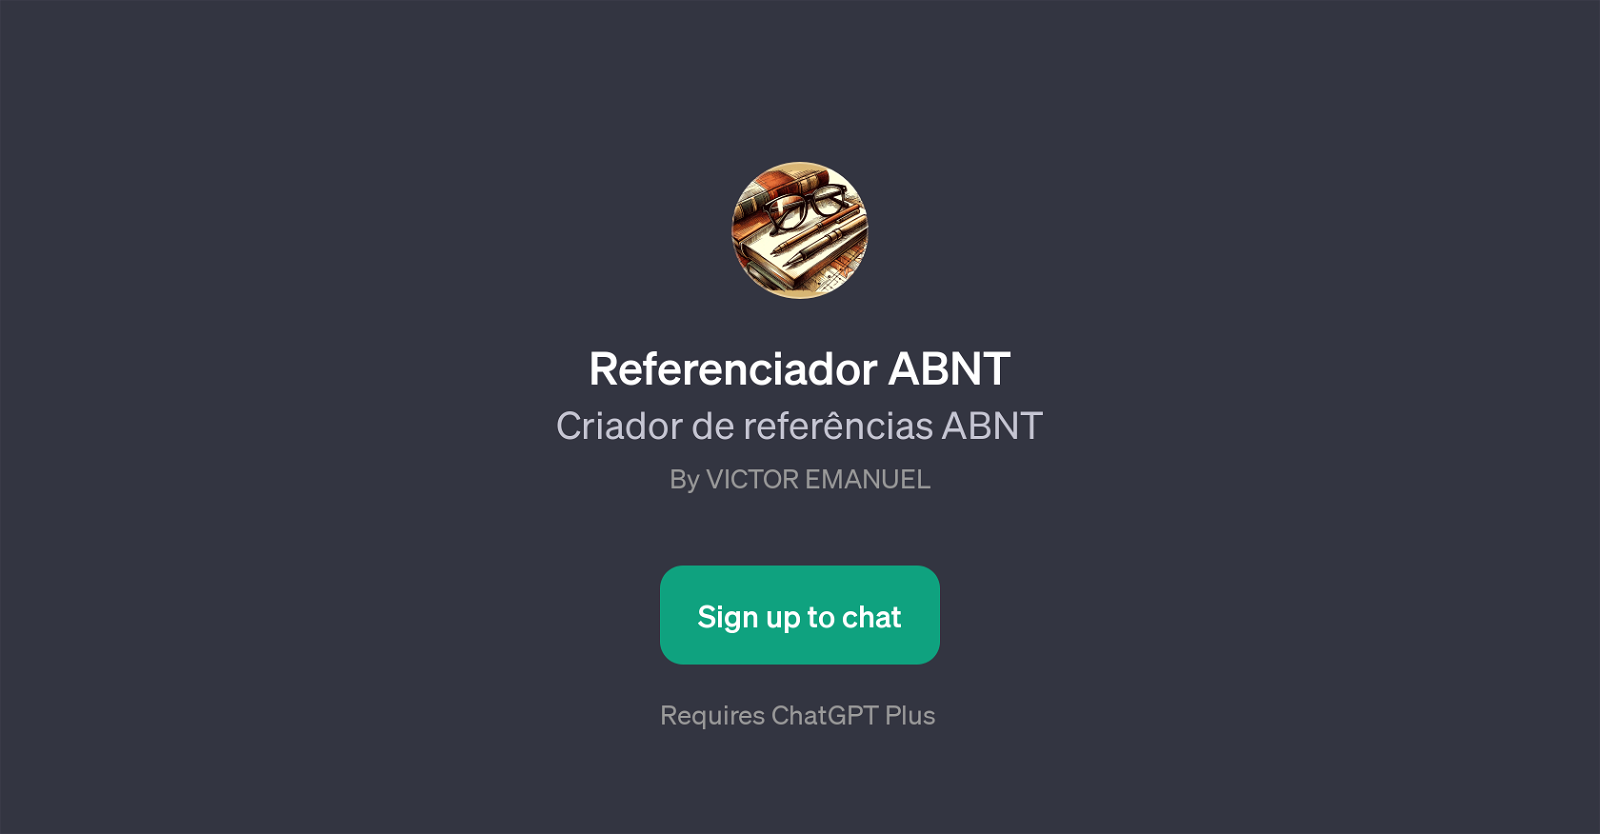 Referenciador ABNT website